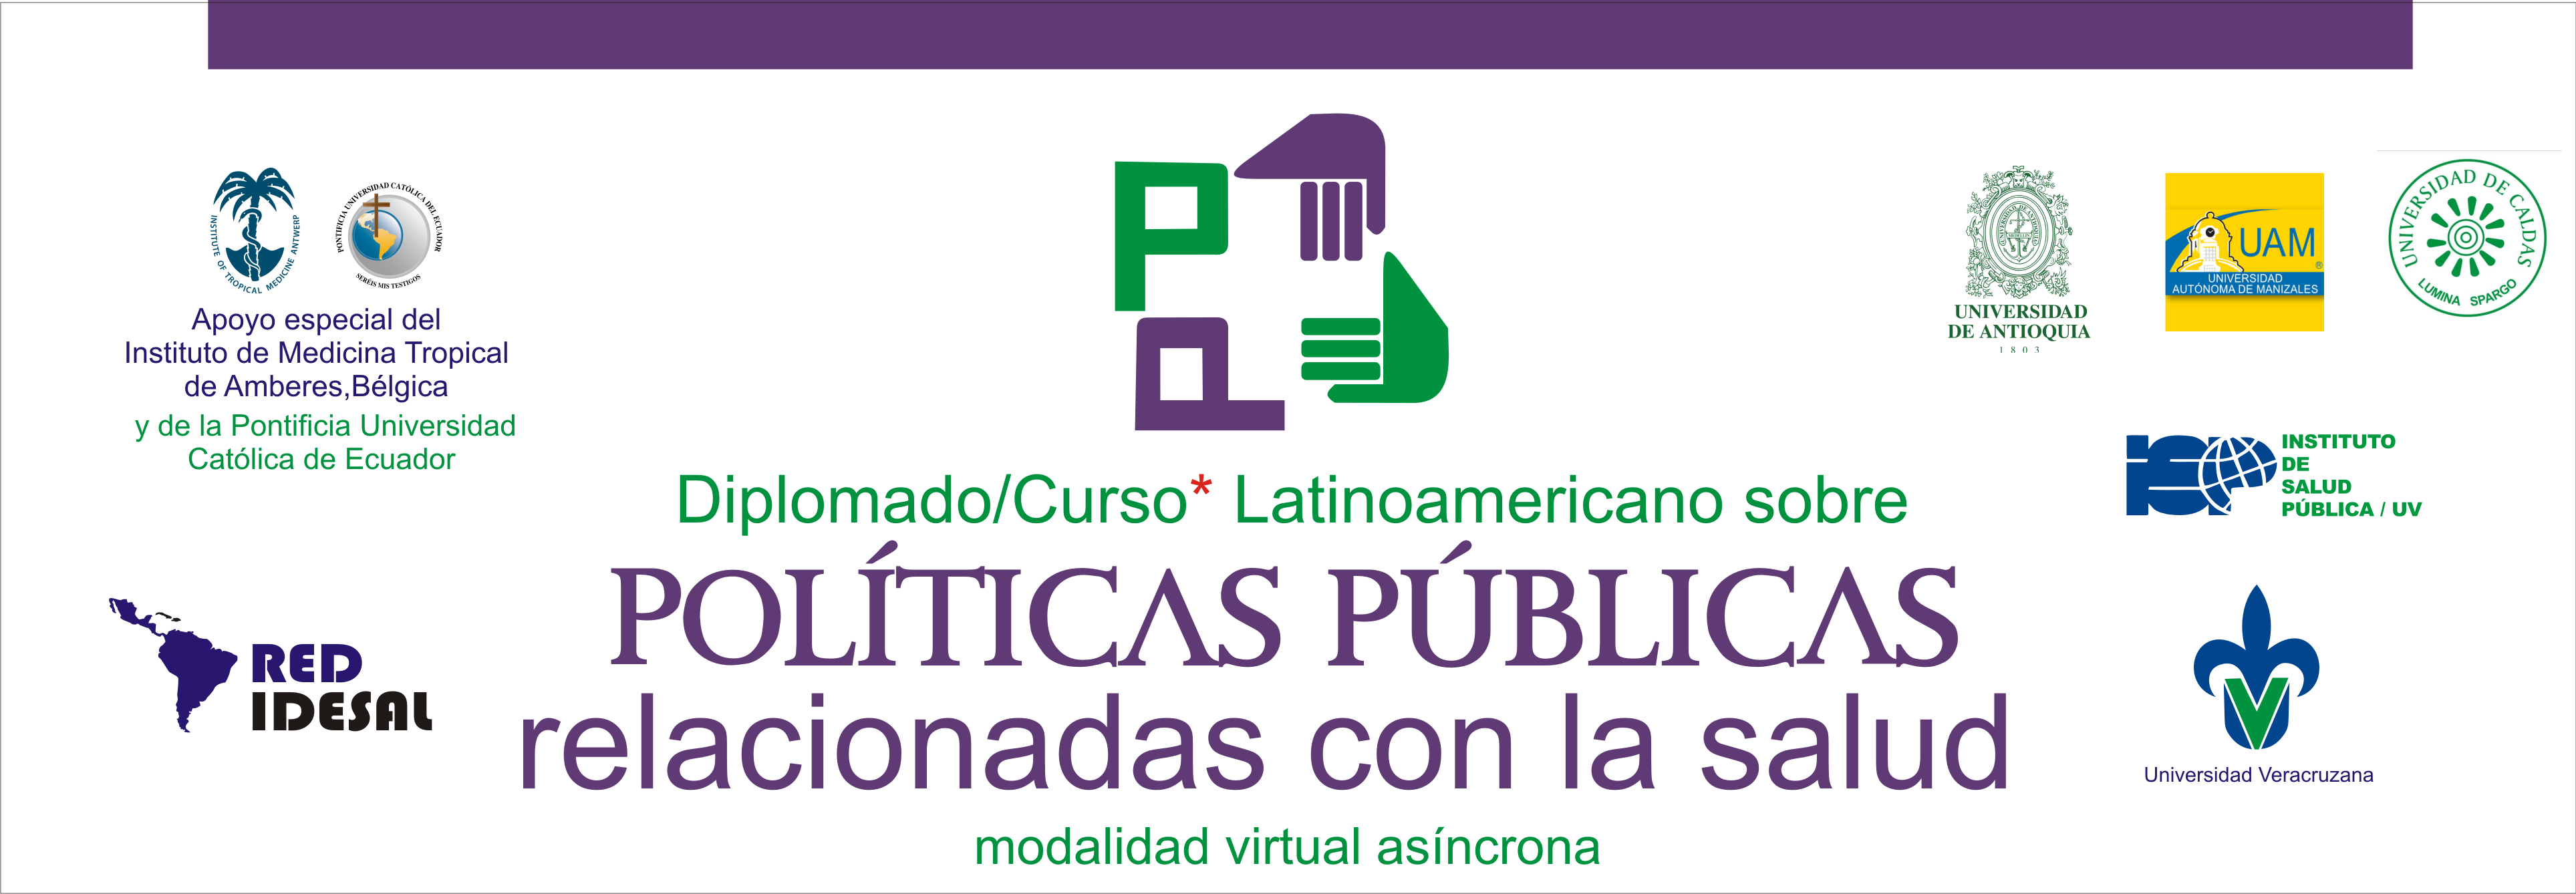 Imagen Diplomado/Curso Latinoamericano sobre Políticas Públicas relacionadas con la salud